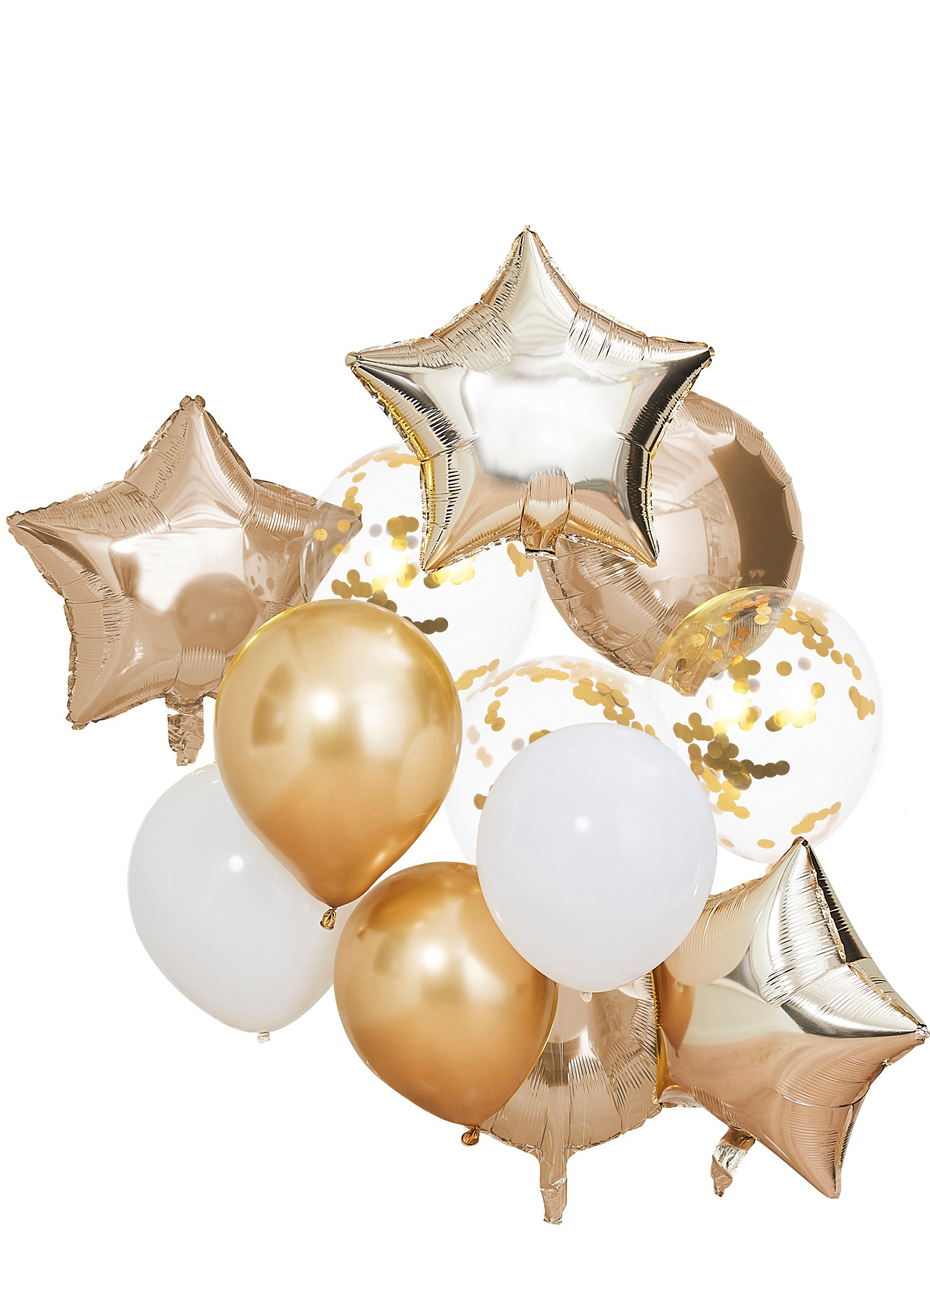 Ballon licorne géant de 43 pouces, ballon d'anniversaire pour filles,  décorations de fête pour filles -  France